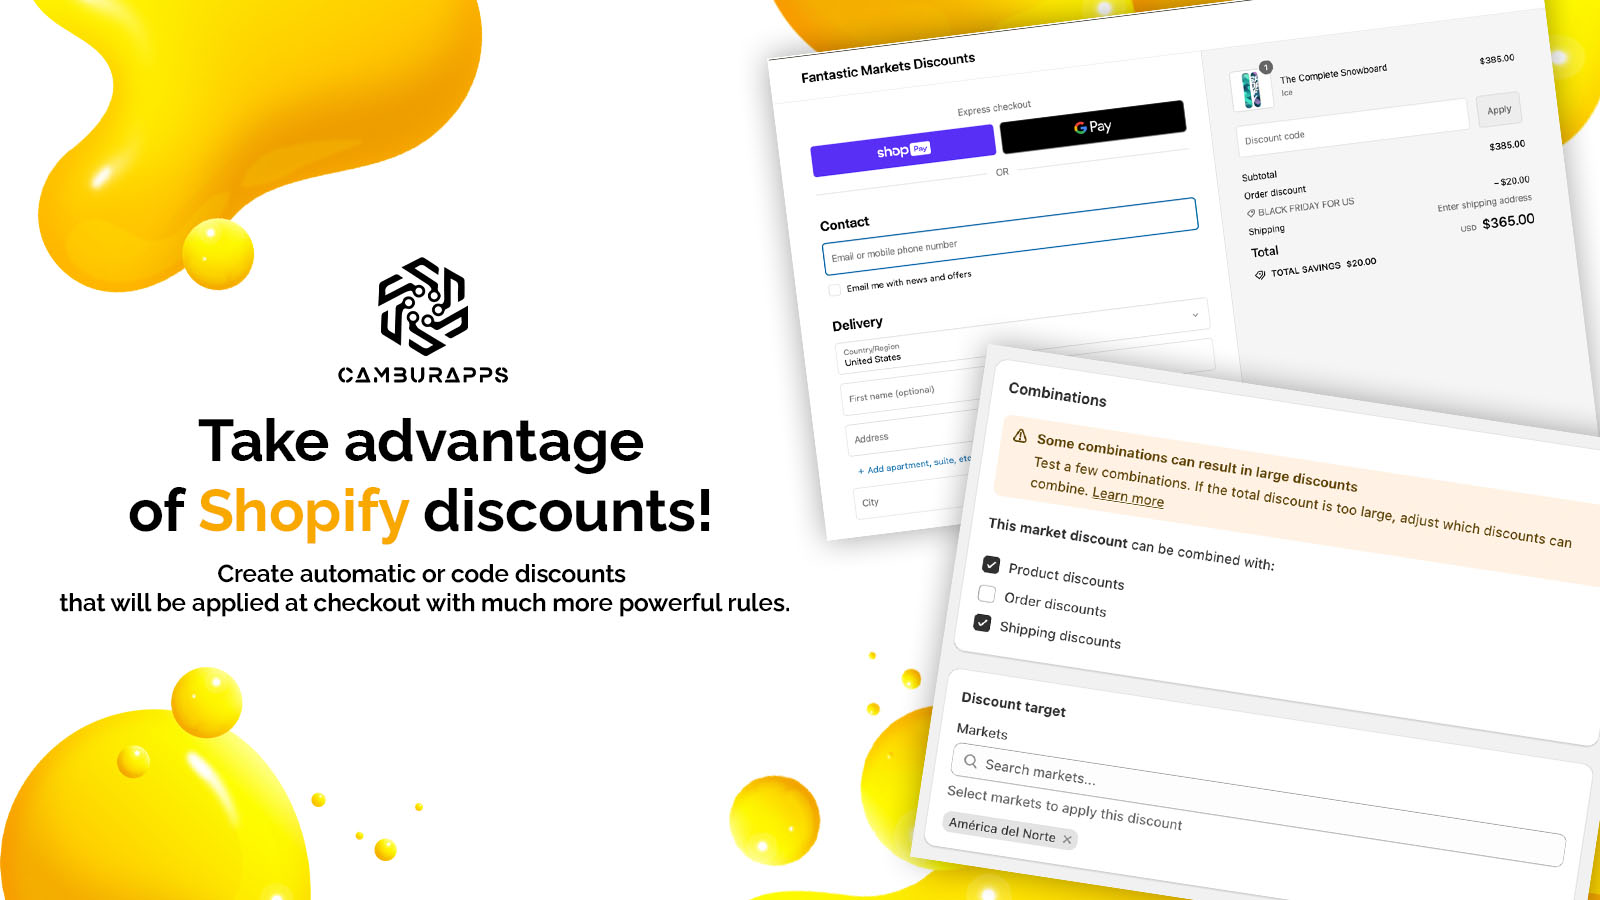 Take advantage of Shopify discounts